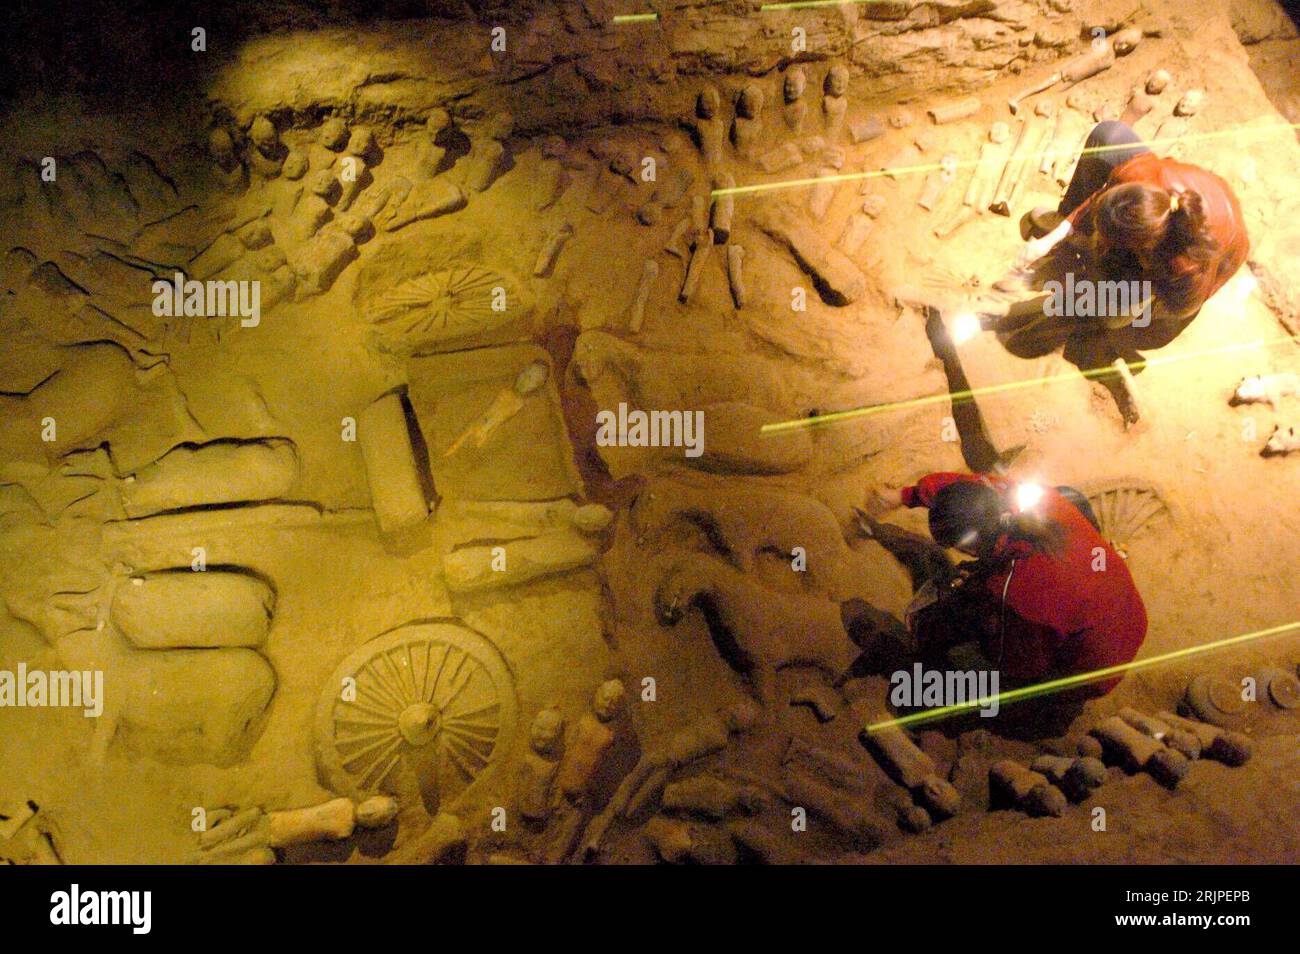 Bildnummer: 51169783 Datum: 21.03.2006 Copyright: imago/Xinhua Mitarbeiter bei Ausgrabungsarbeiten im Hanyang Mausoleum - Begräbnisstätte von Herrscher Liu Qi der Han Dynastie (206 v.Chr. bis 24 n.Chr.) PUBLICATIONxNOTxINxCHN, Personen , Restlichtaufnahme , Objekte; 2006, Hanyang, Shaanxi, Xian, Xi an, Mausoleum, Mausoleen, Museum, Museen, Begräbnisstätte, Begräbnisstätten, Grab, Gräber, Ausgrabung, Ausgrabungen, Begräbnisstätte, Mitarbeiter, Fonds, Funde, Ausgrabungsfunde, Ausgrabungsfonds, Fundstück, Fundstücke, Draufsicht; , quer, Kbdig, Gruppenbild, Vogelperspektive, Perspektive, China, , Stockfoto